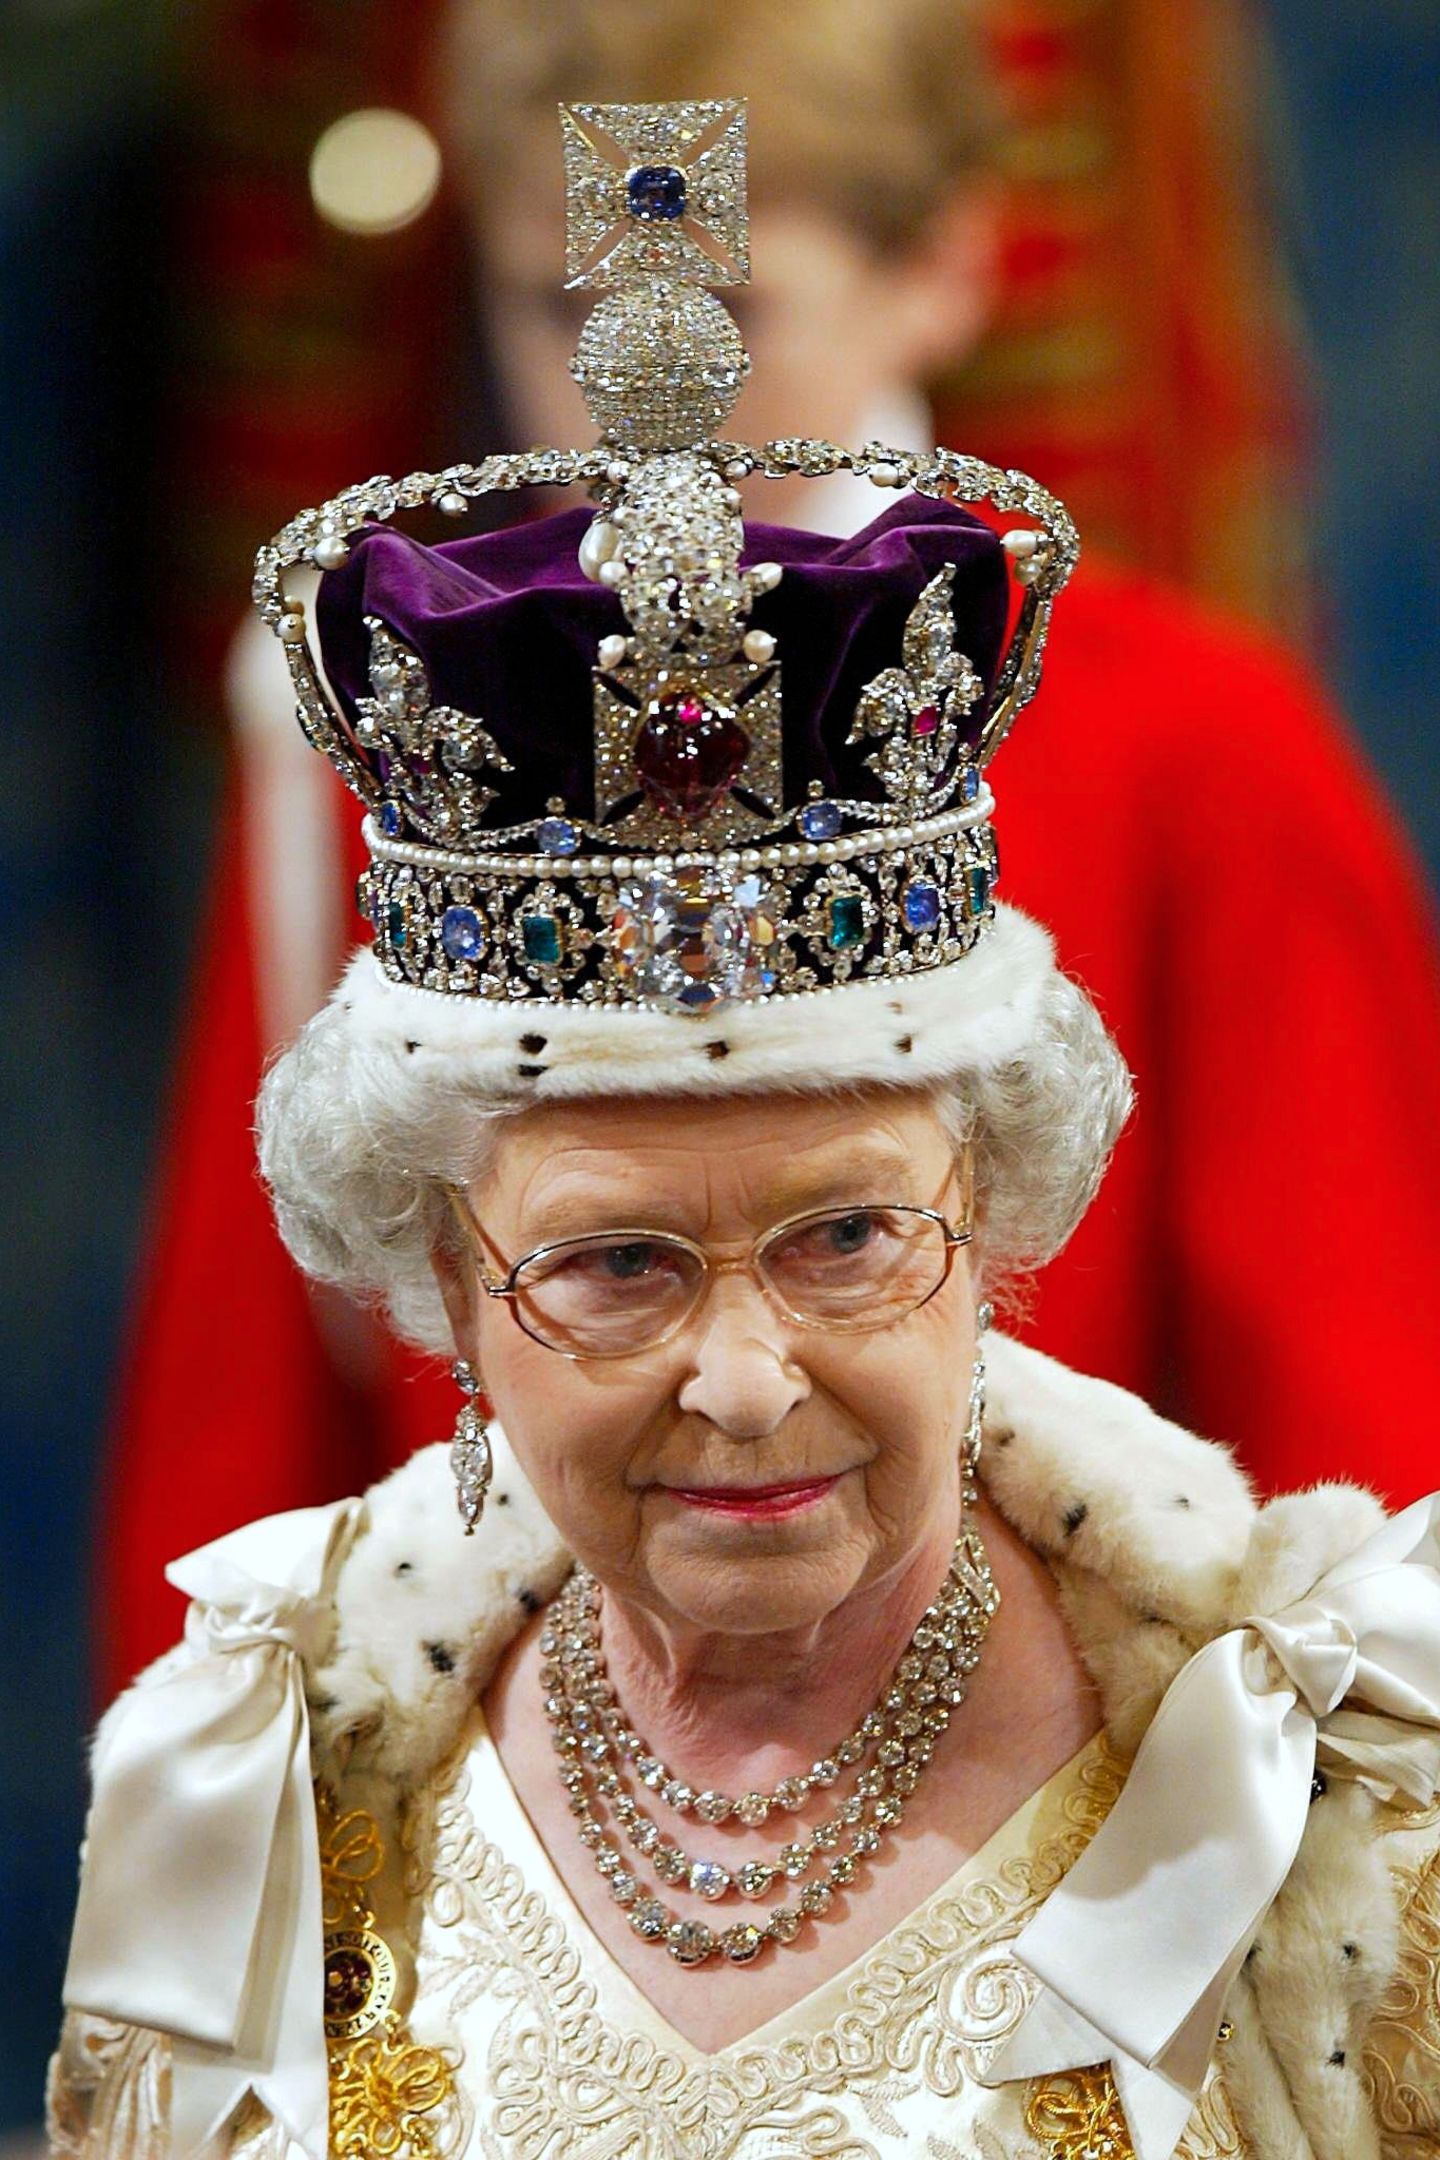 Das wohl bedeutenste Juwel des britischen Königshauses: die Imperial State Crown. Sie wird traditionell am Ende der Krönungszeremonie beim Auszug aus der Westminster Abbey getragen und wiegt etwas über ein Kilogramm. Der Wert der Krone wird auf rund 300.000 Pfund geschätzt. 